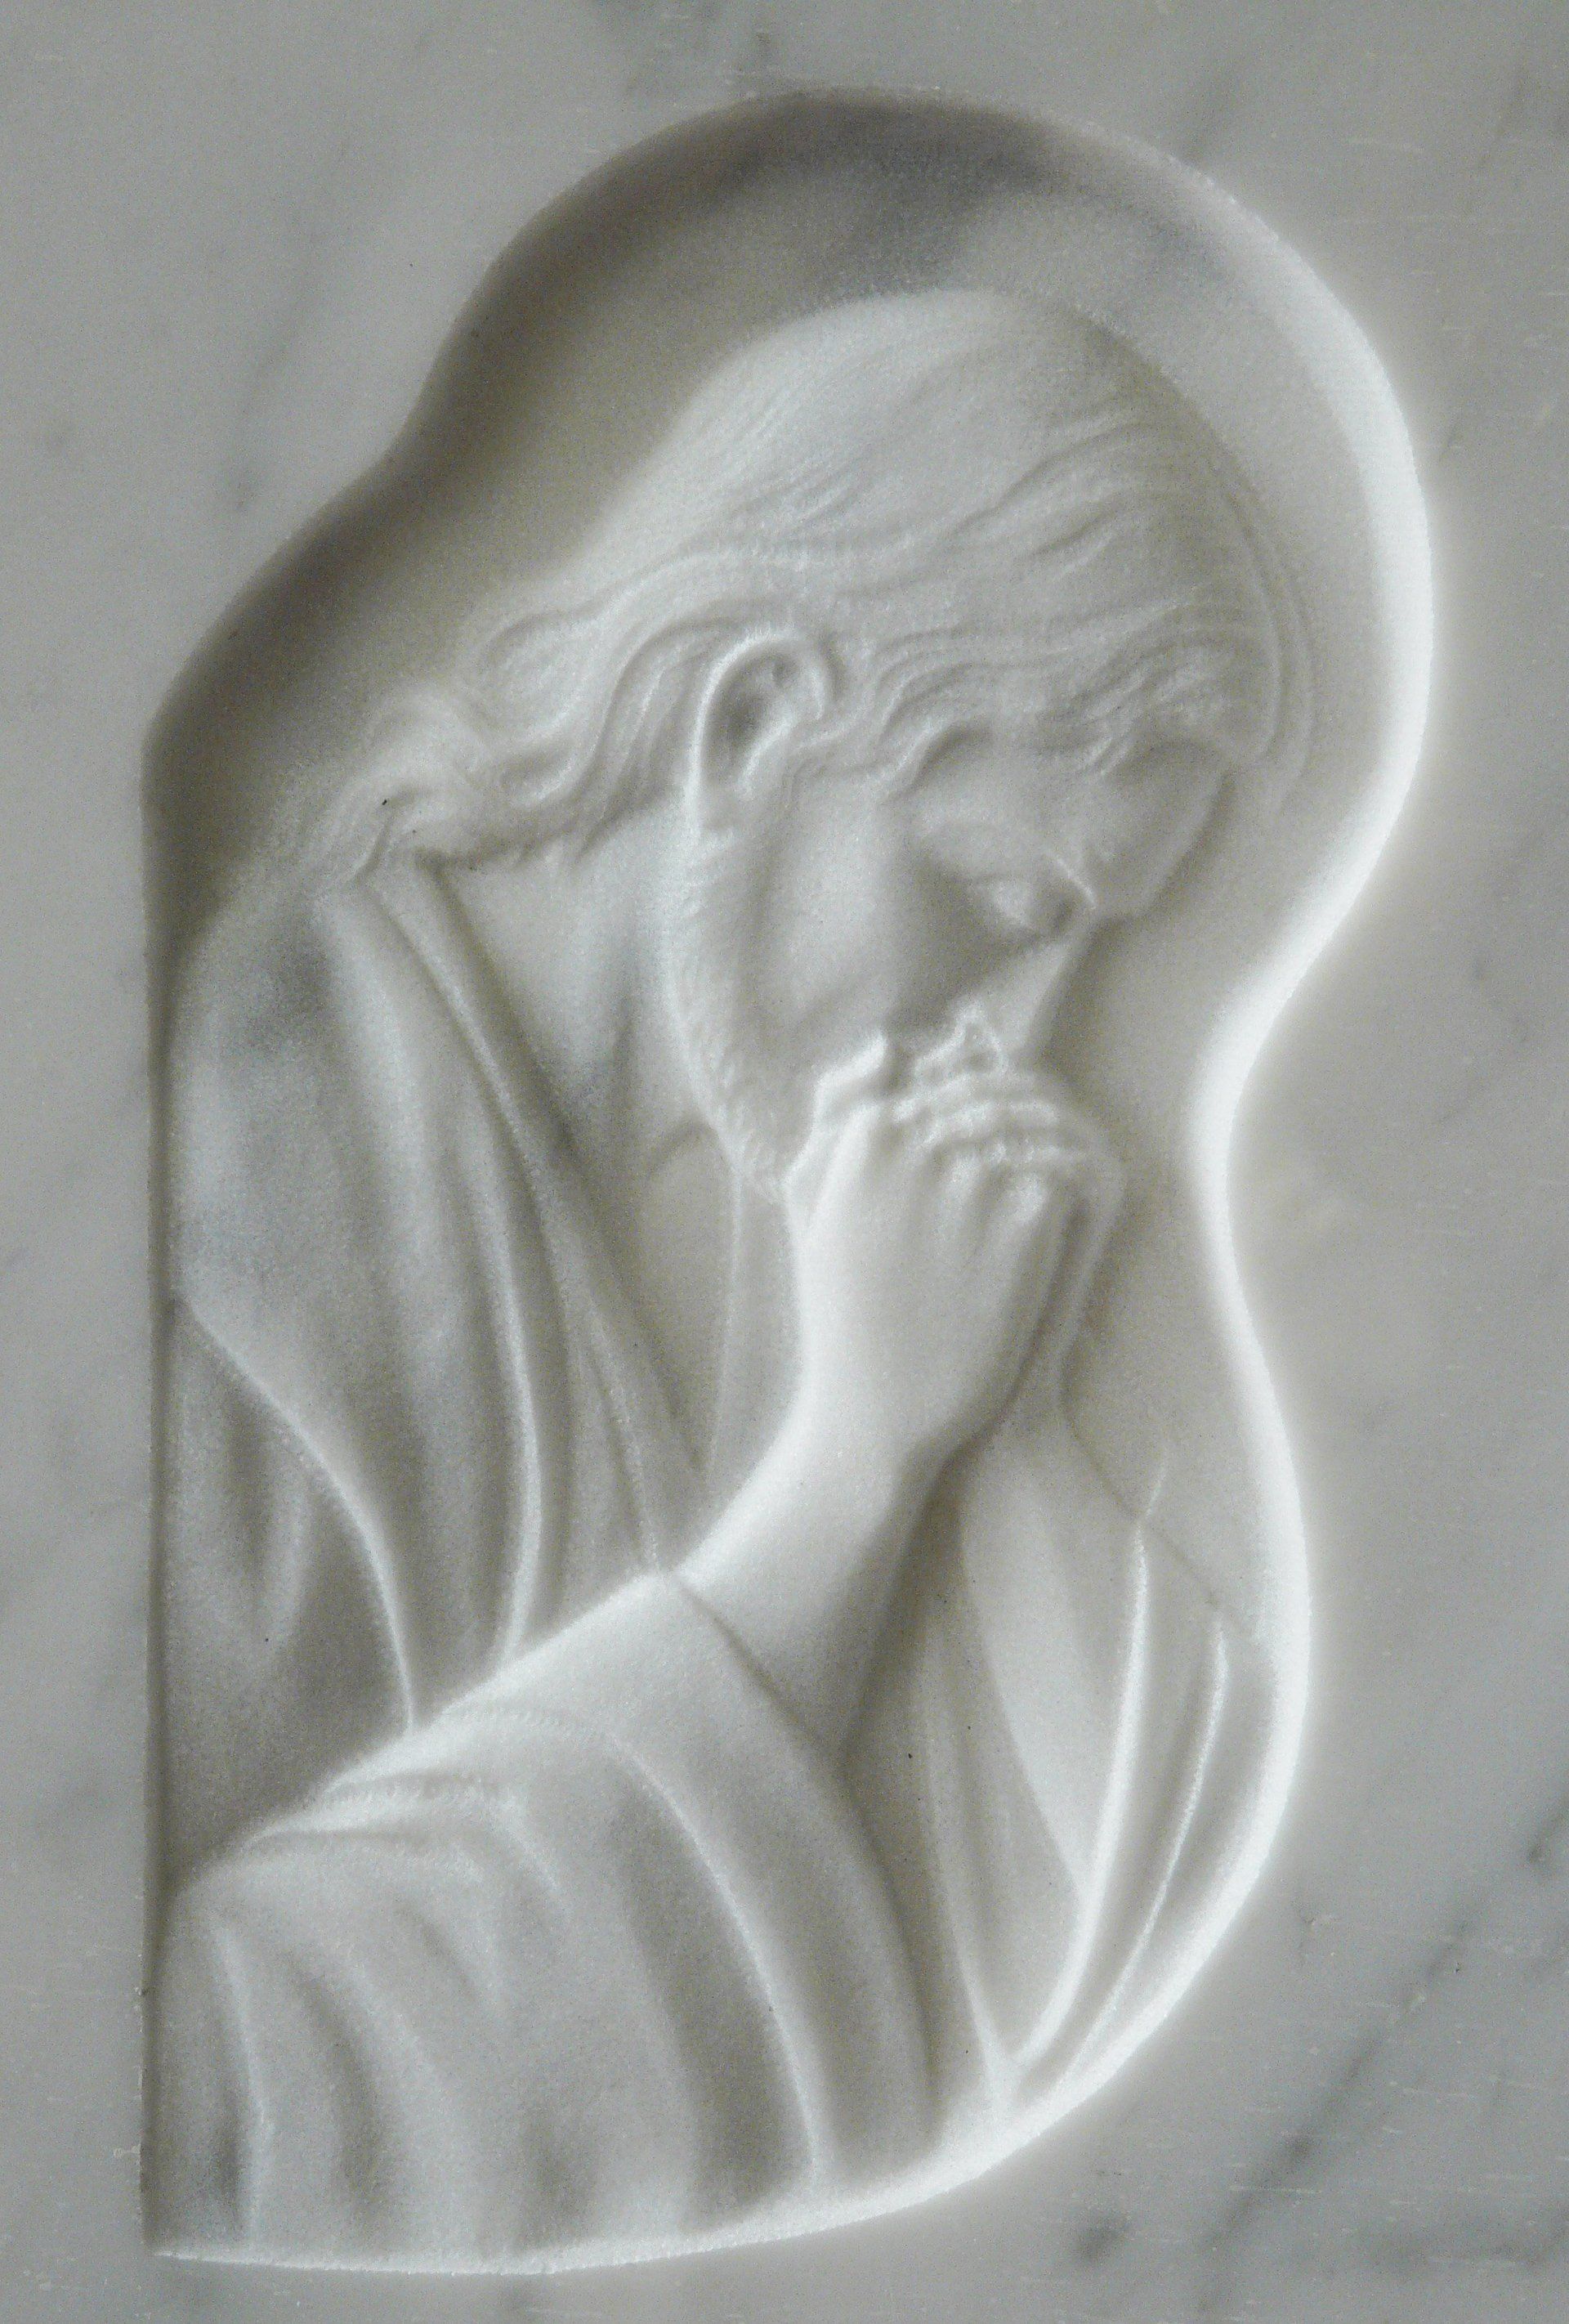 bassorilievo su marmo bianco rappresentante gesù che prega